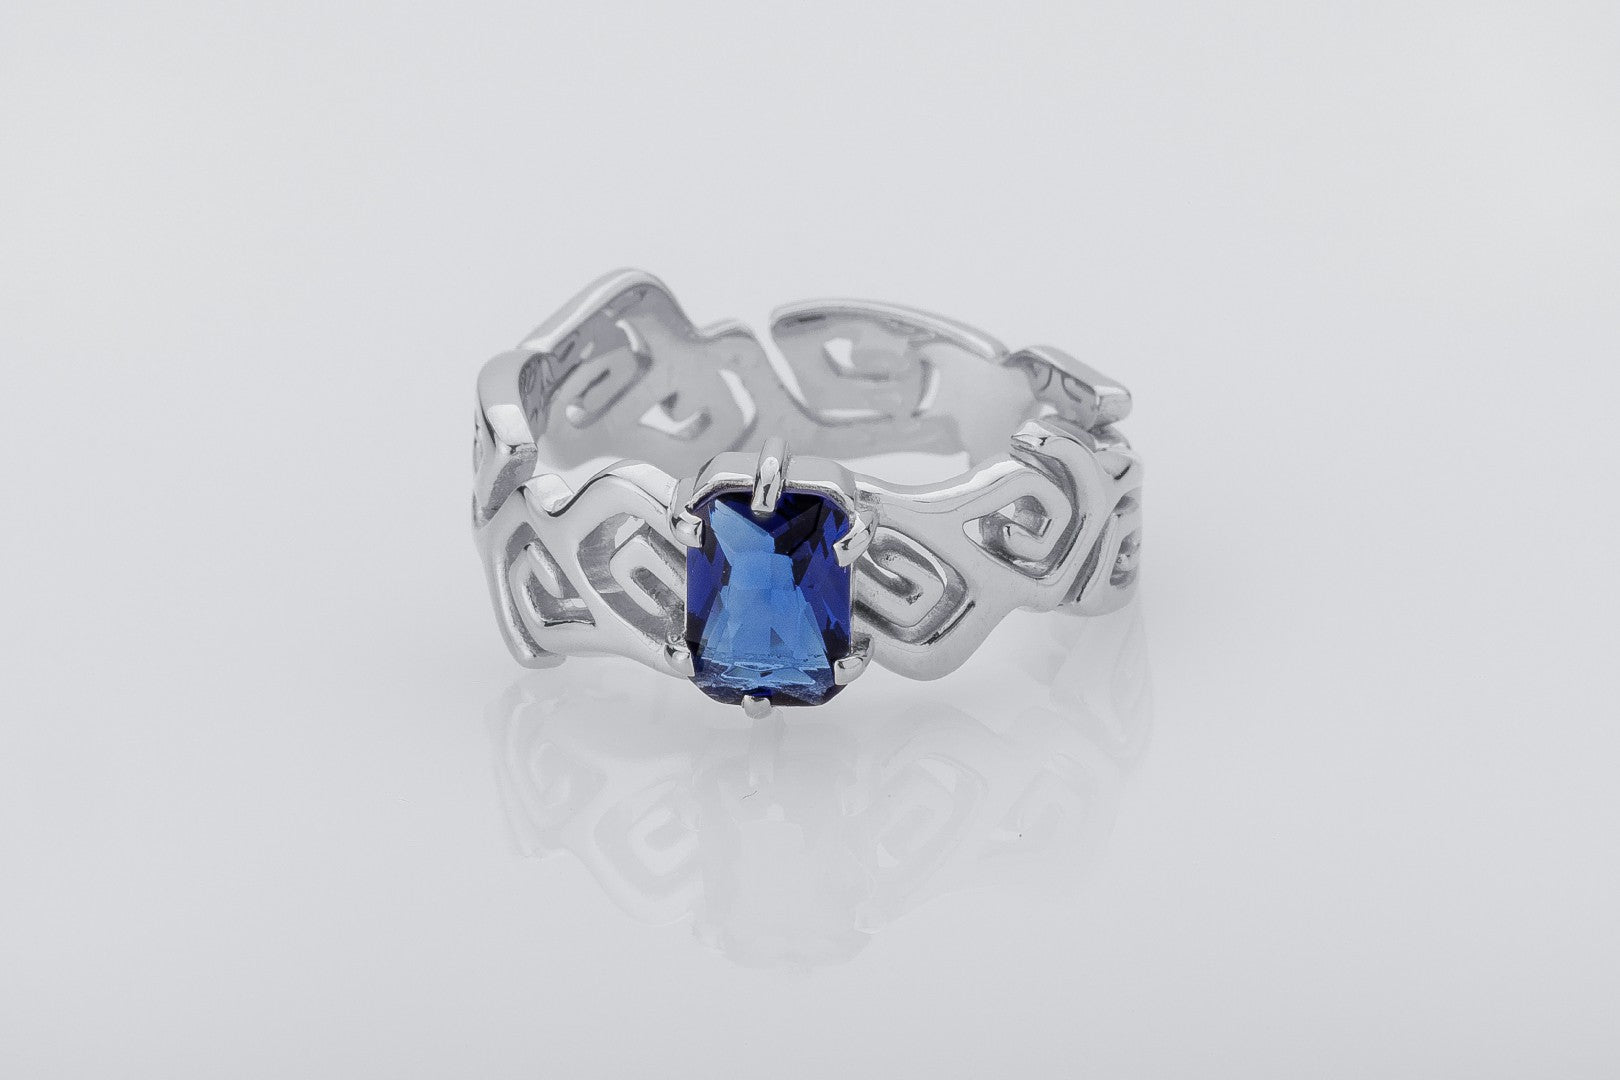 Sea Foam Ring with Blue Gem, 925 Silver